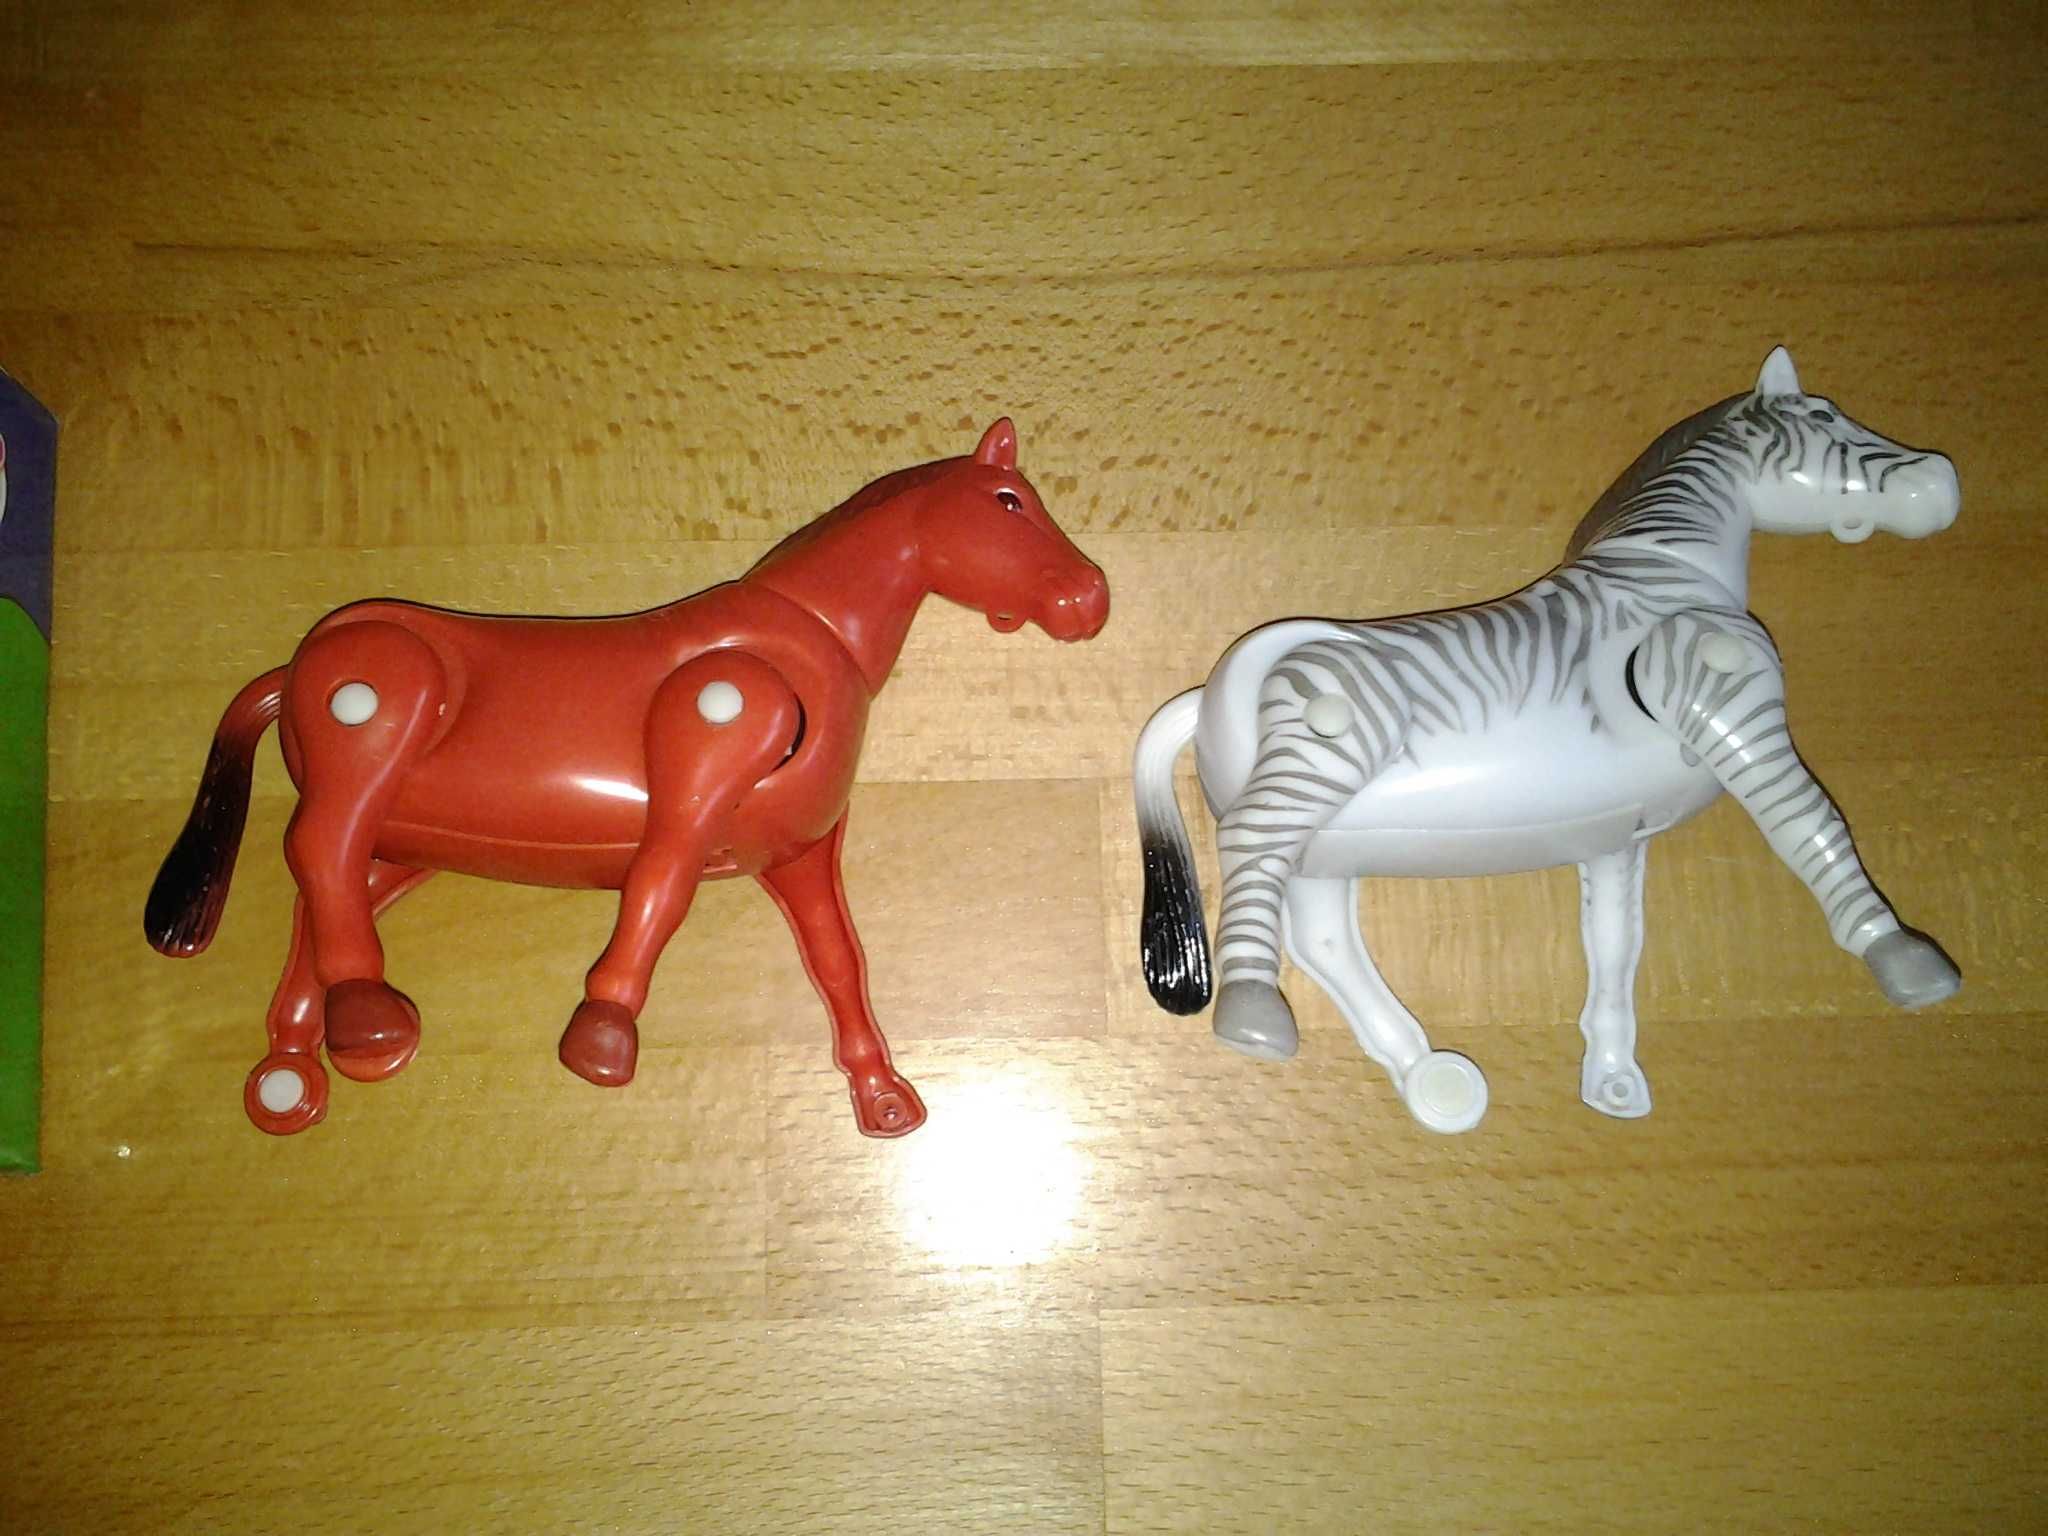 Funny Zebra - Horse jucarie copii 17 cm